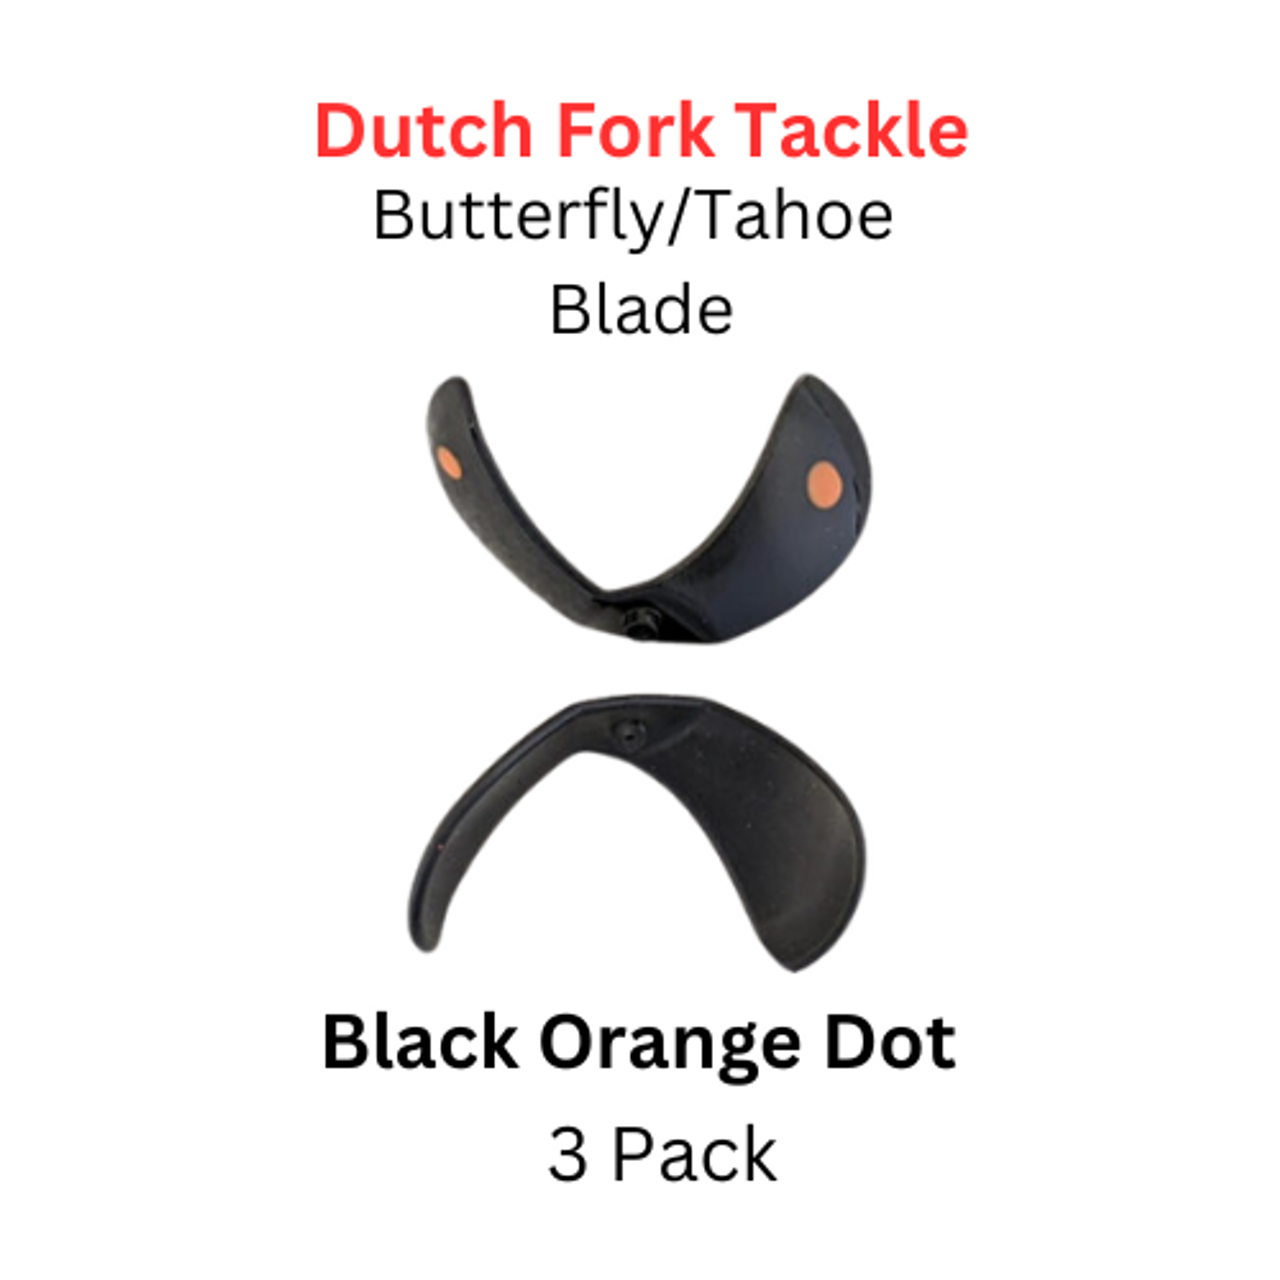 DUTCH FORK: Butterfly/Tahoe Blade Size 1 Black Orange Dot